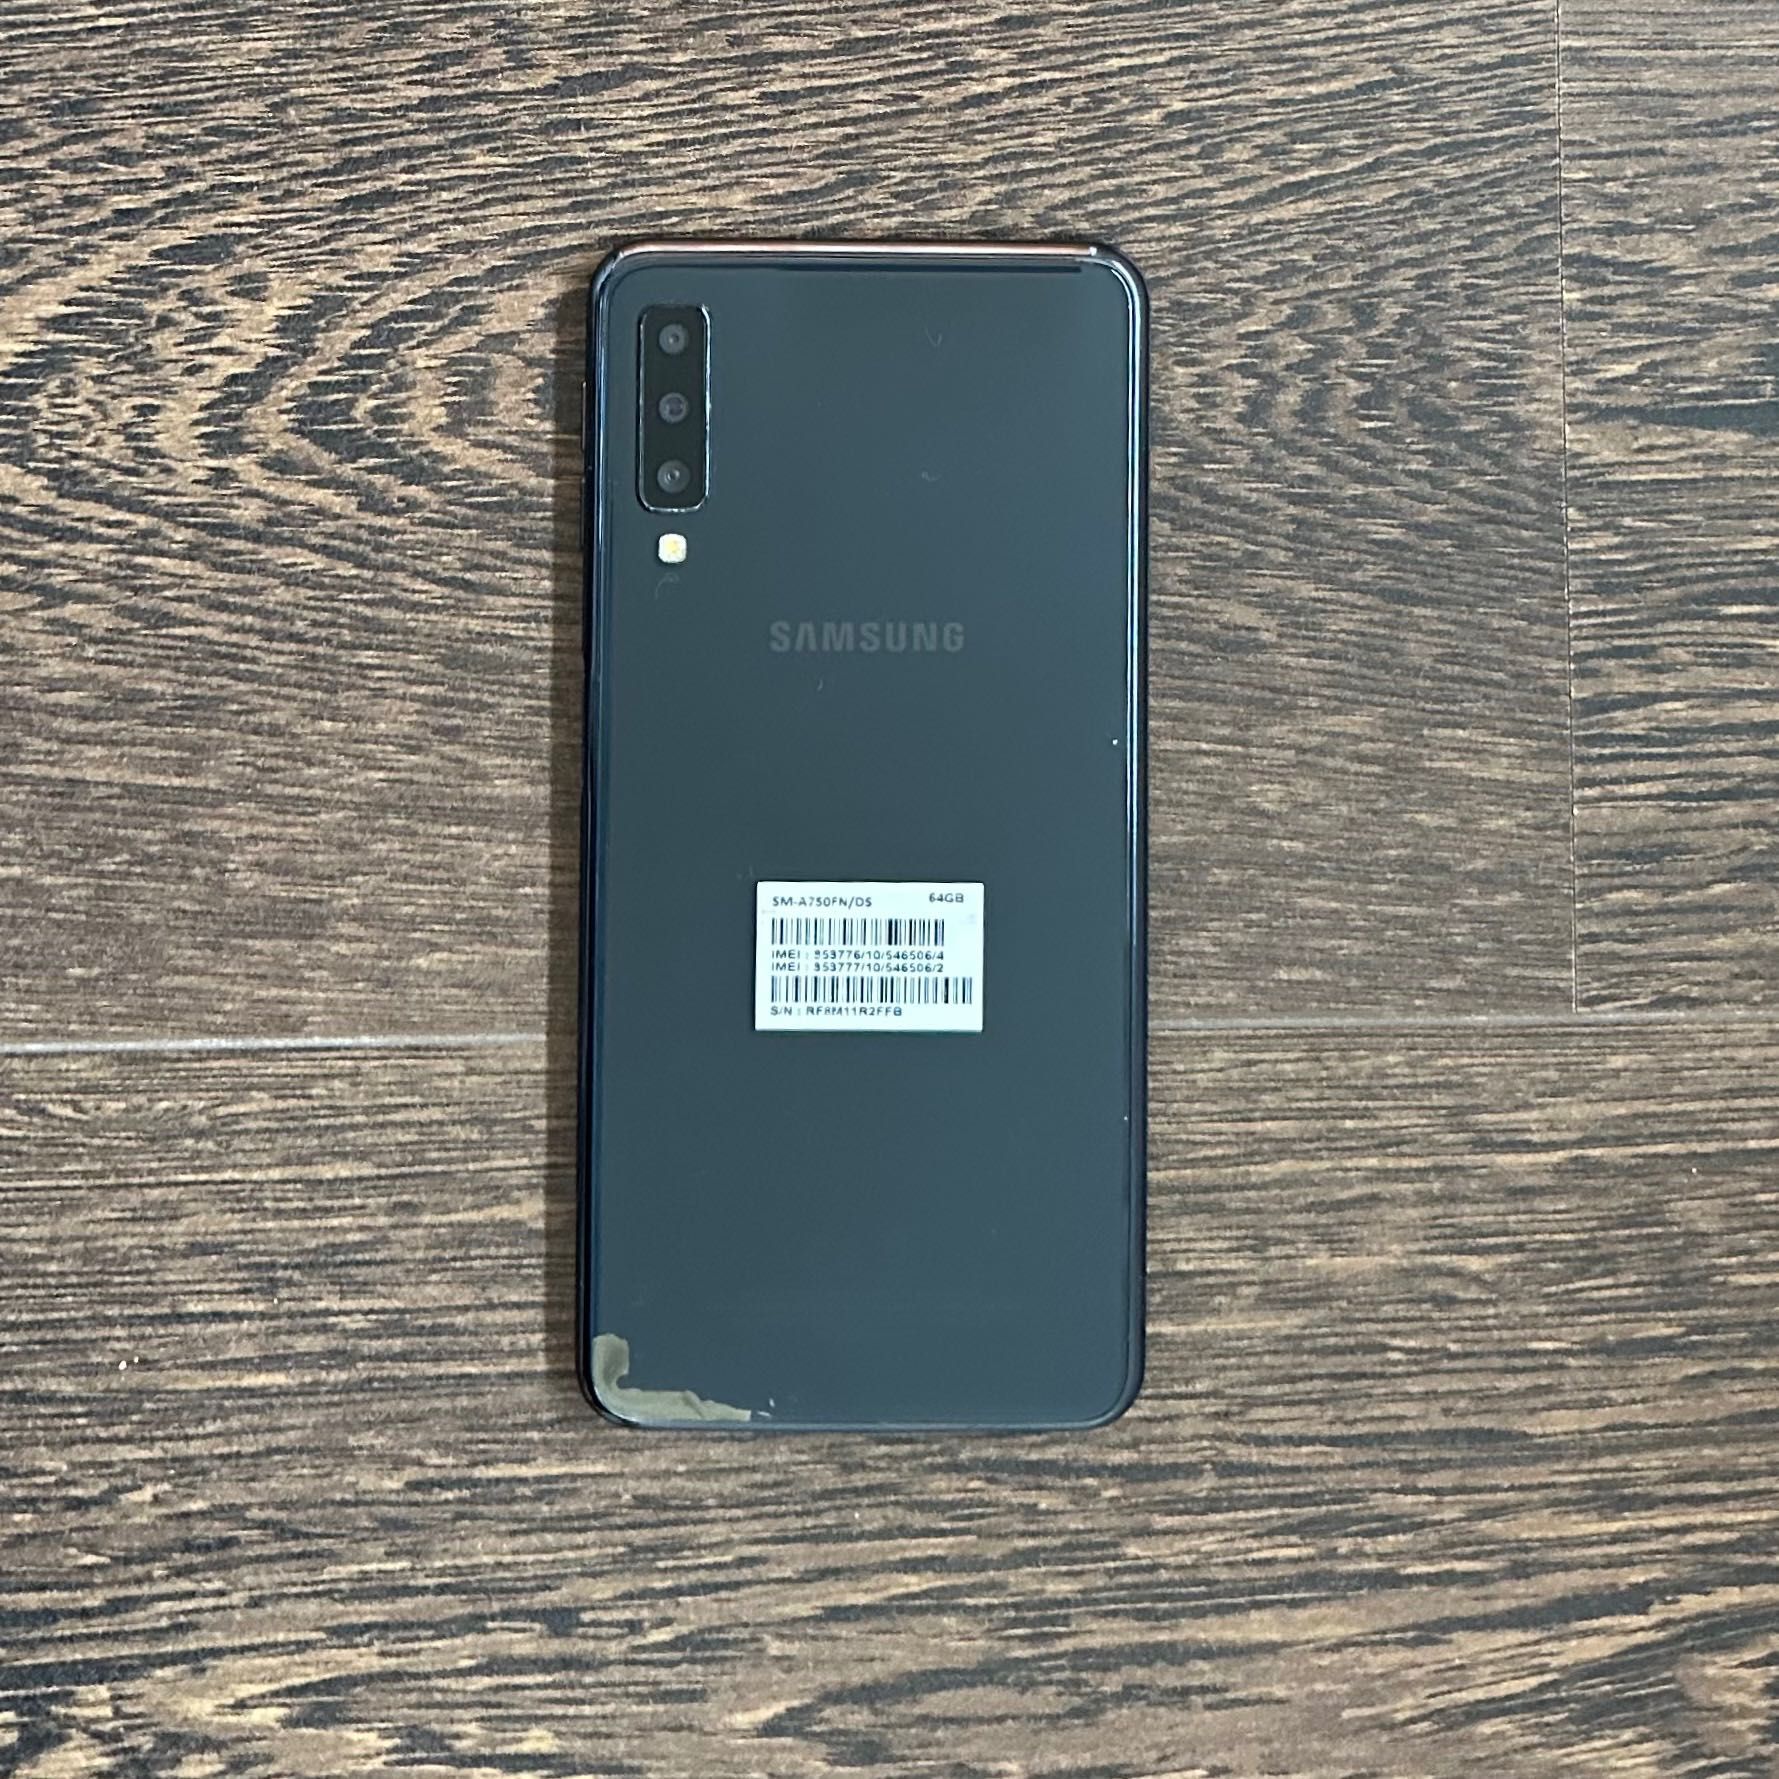 Samsung A7 2018, 64 GB como novo